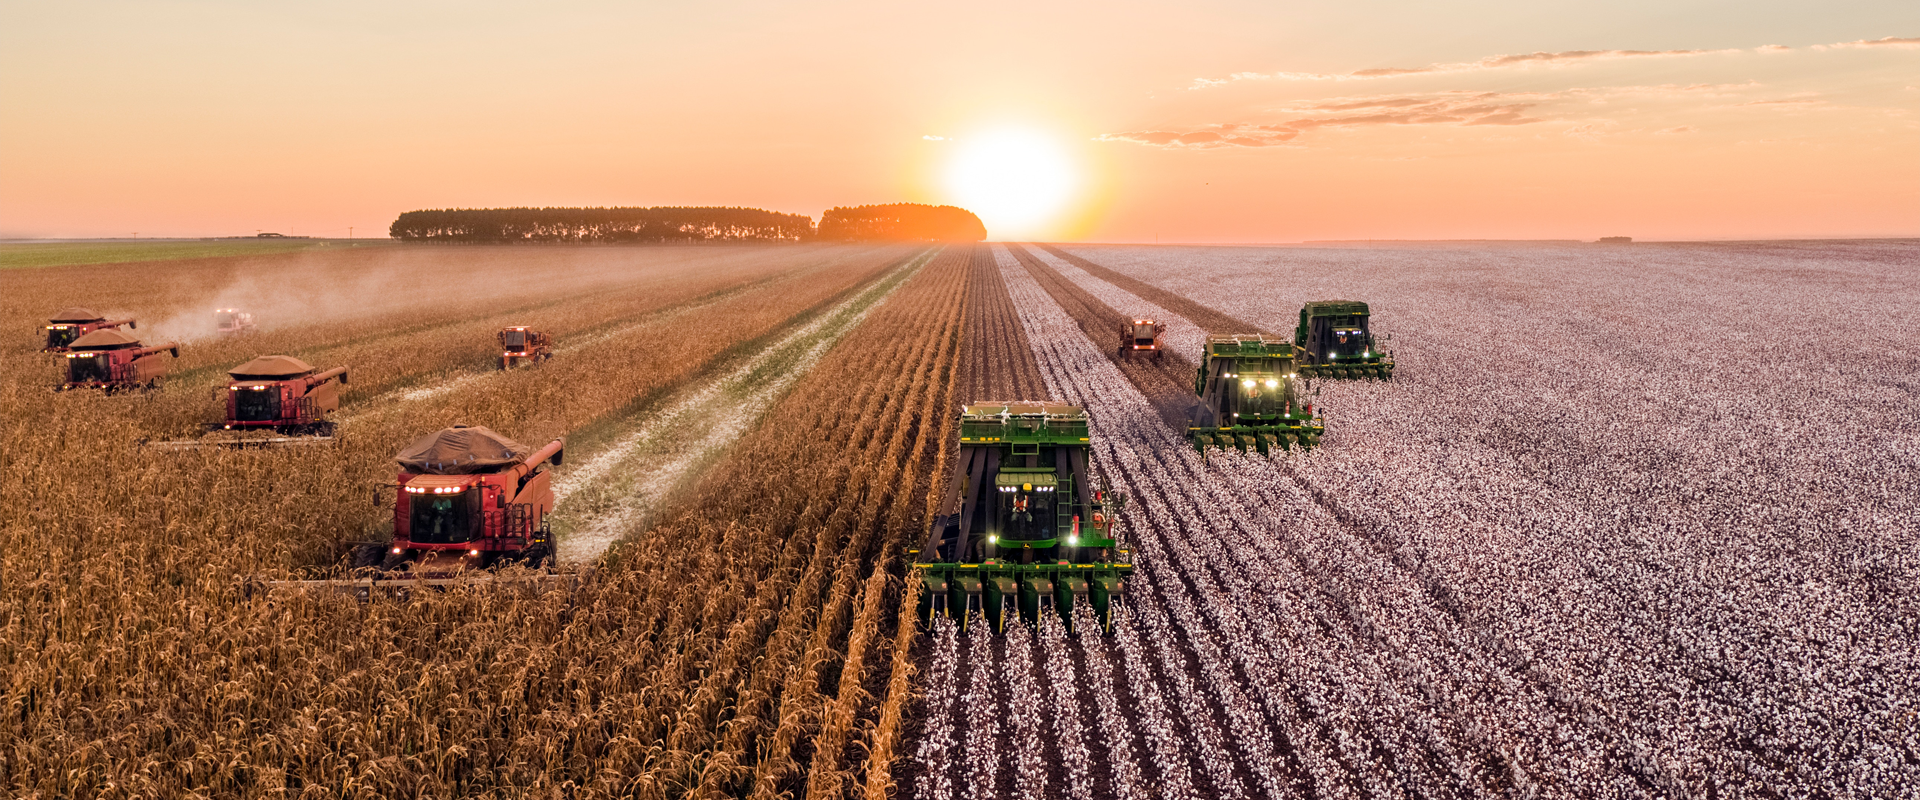 Neueste technologien in der landwirtschaft, von denen Sie wahrscheinlich noch nichts wussten